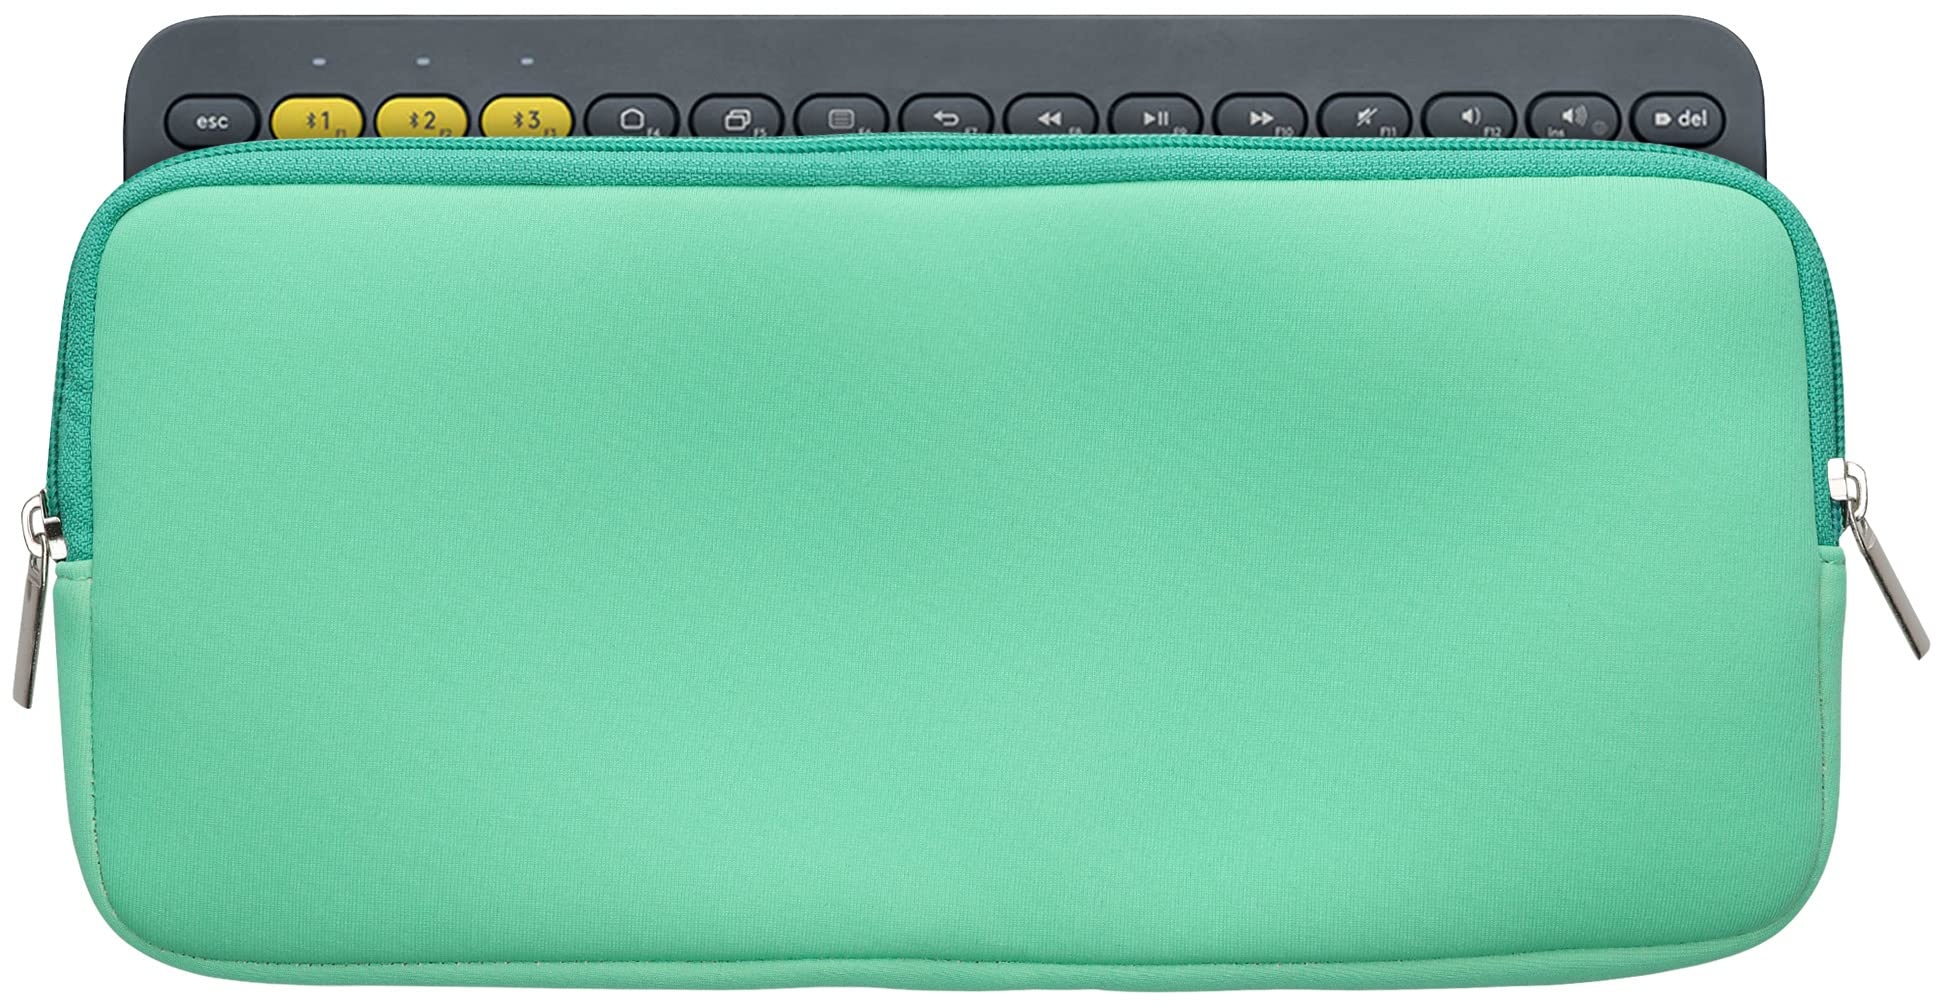 kwmobile Tastatur-Hülle kompatibel mit Logitech K380 - Neopren Schutzhülle Case Tasche für Tastatur - Neoprentasche für Keyboard - Porzellan Grün